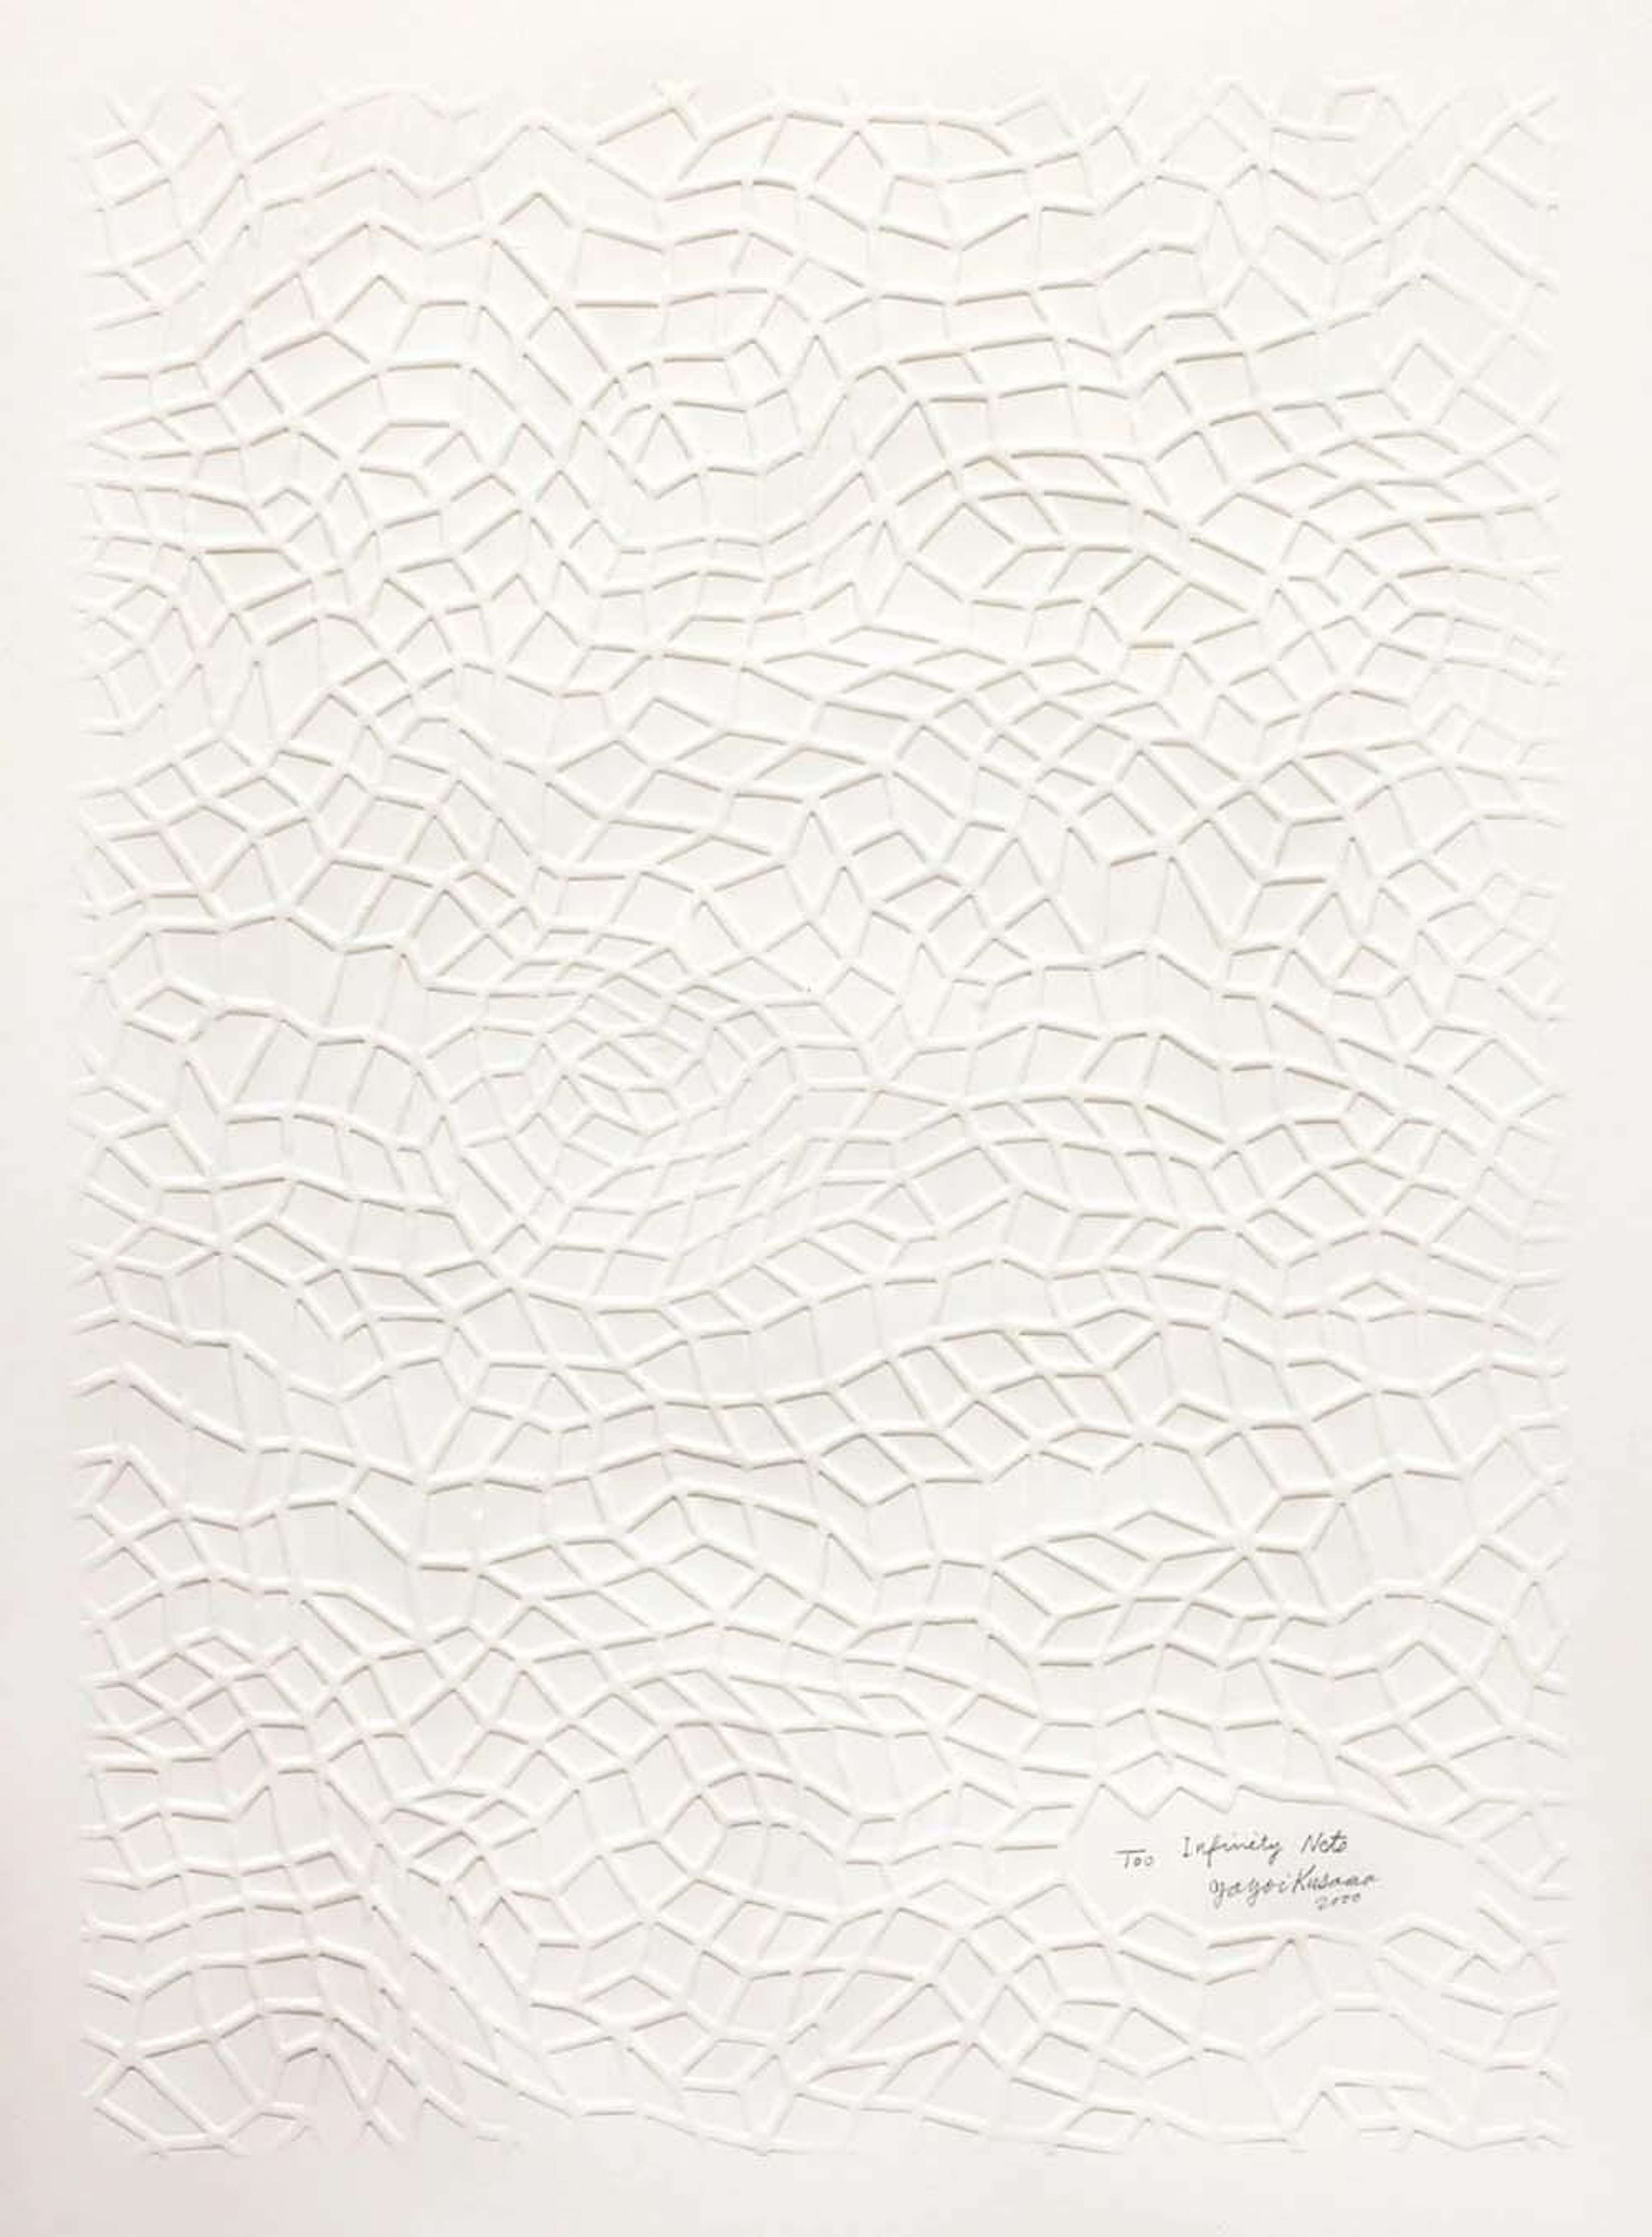 Yayomi Kusama's Infinity Nets, Kusama 297. A screenprint of a white geometric pattern over a white background 